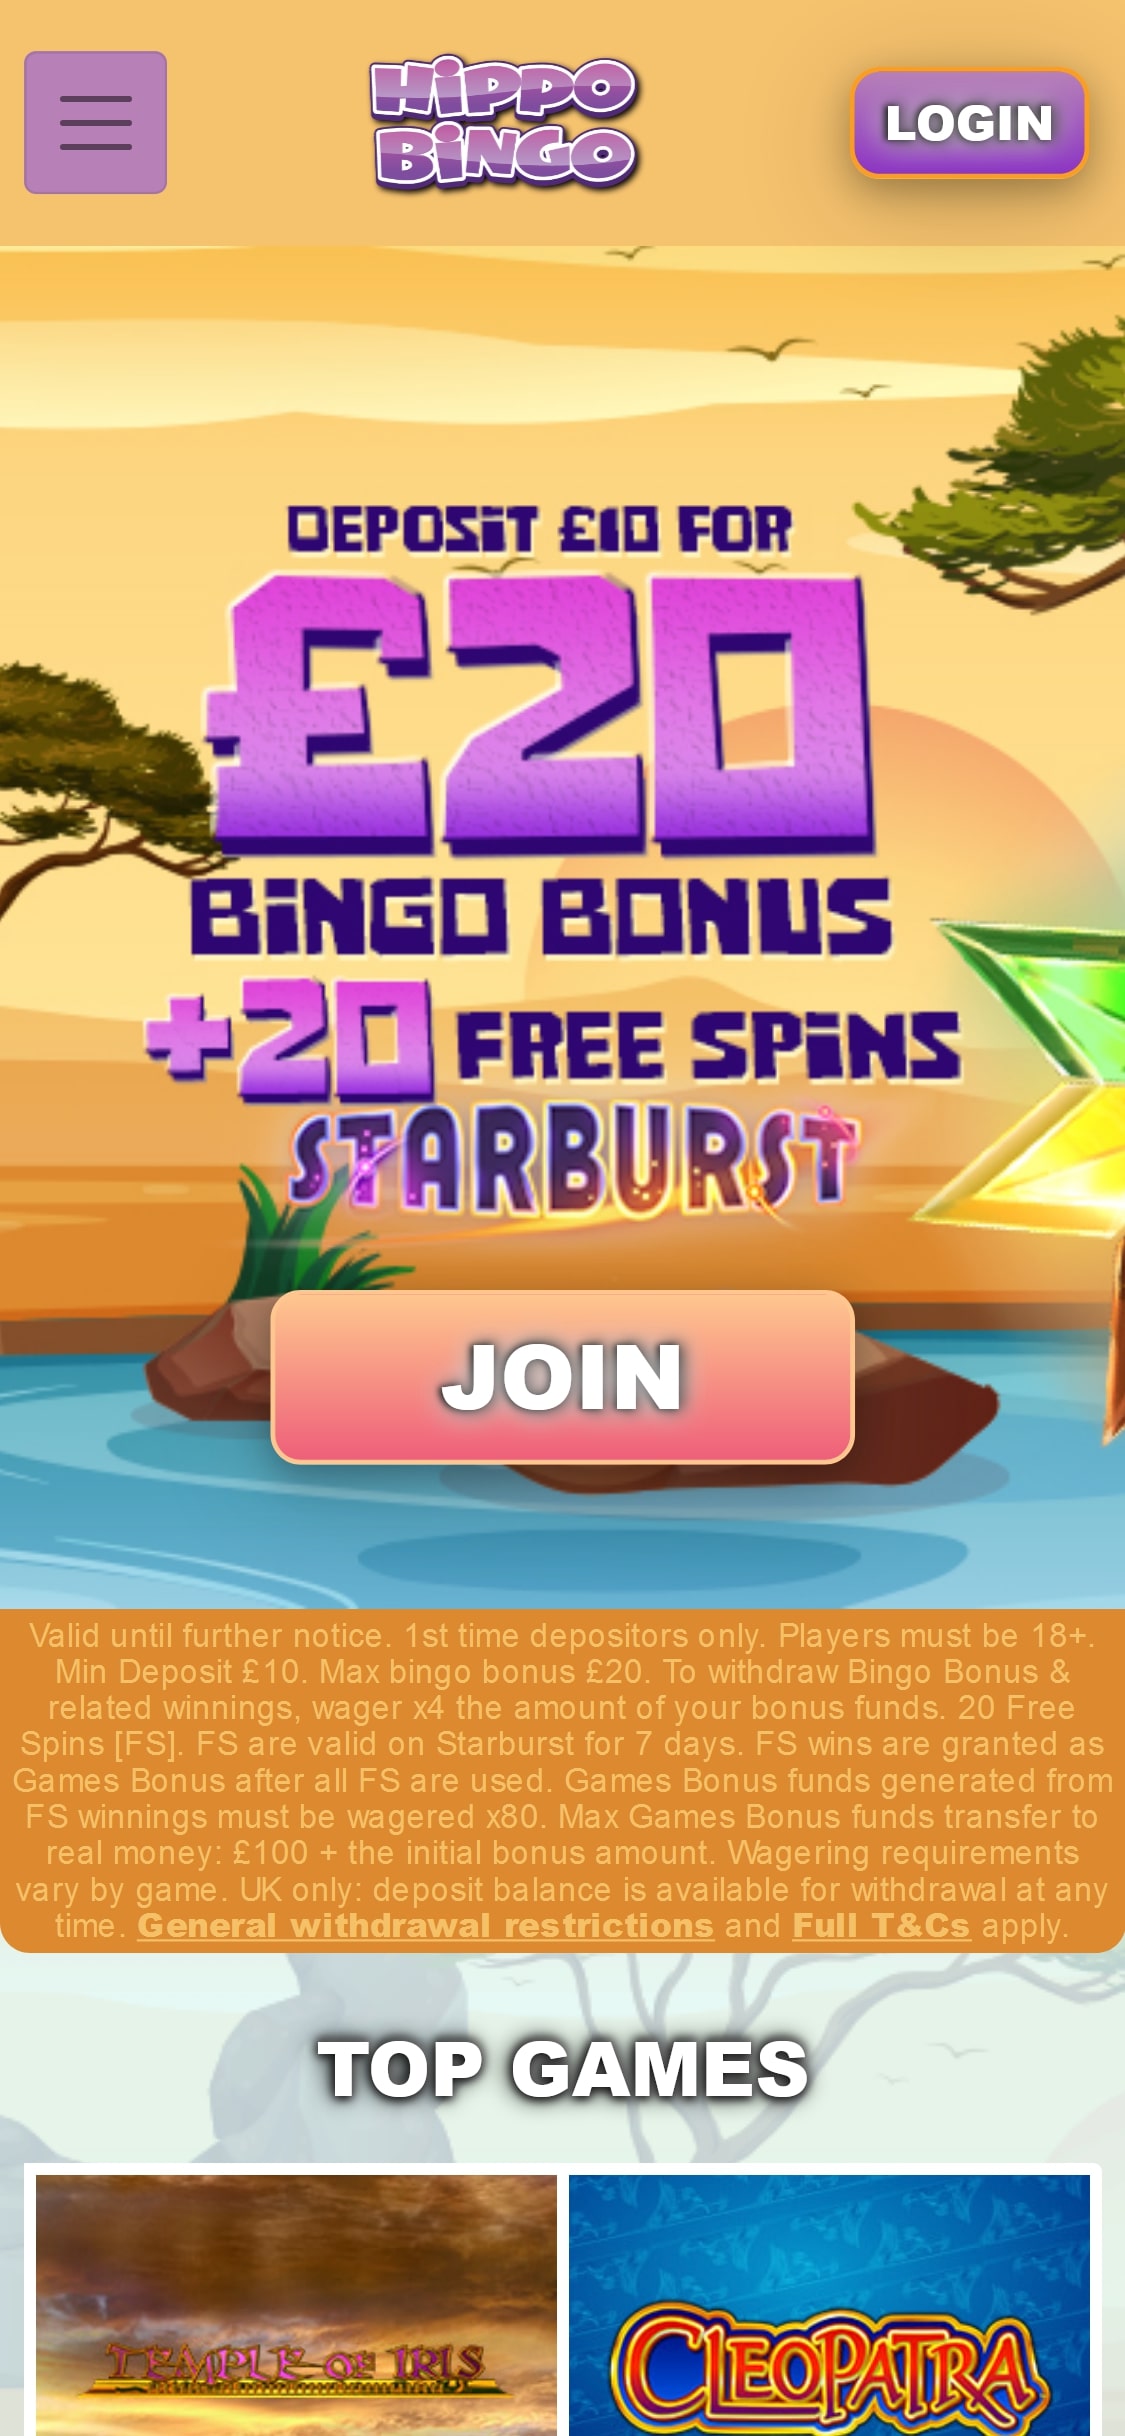 Hippo Bingo Casino Mobile Review